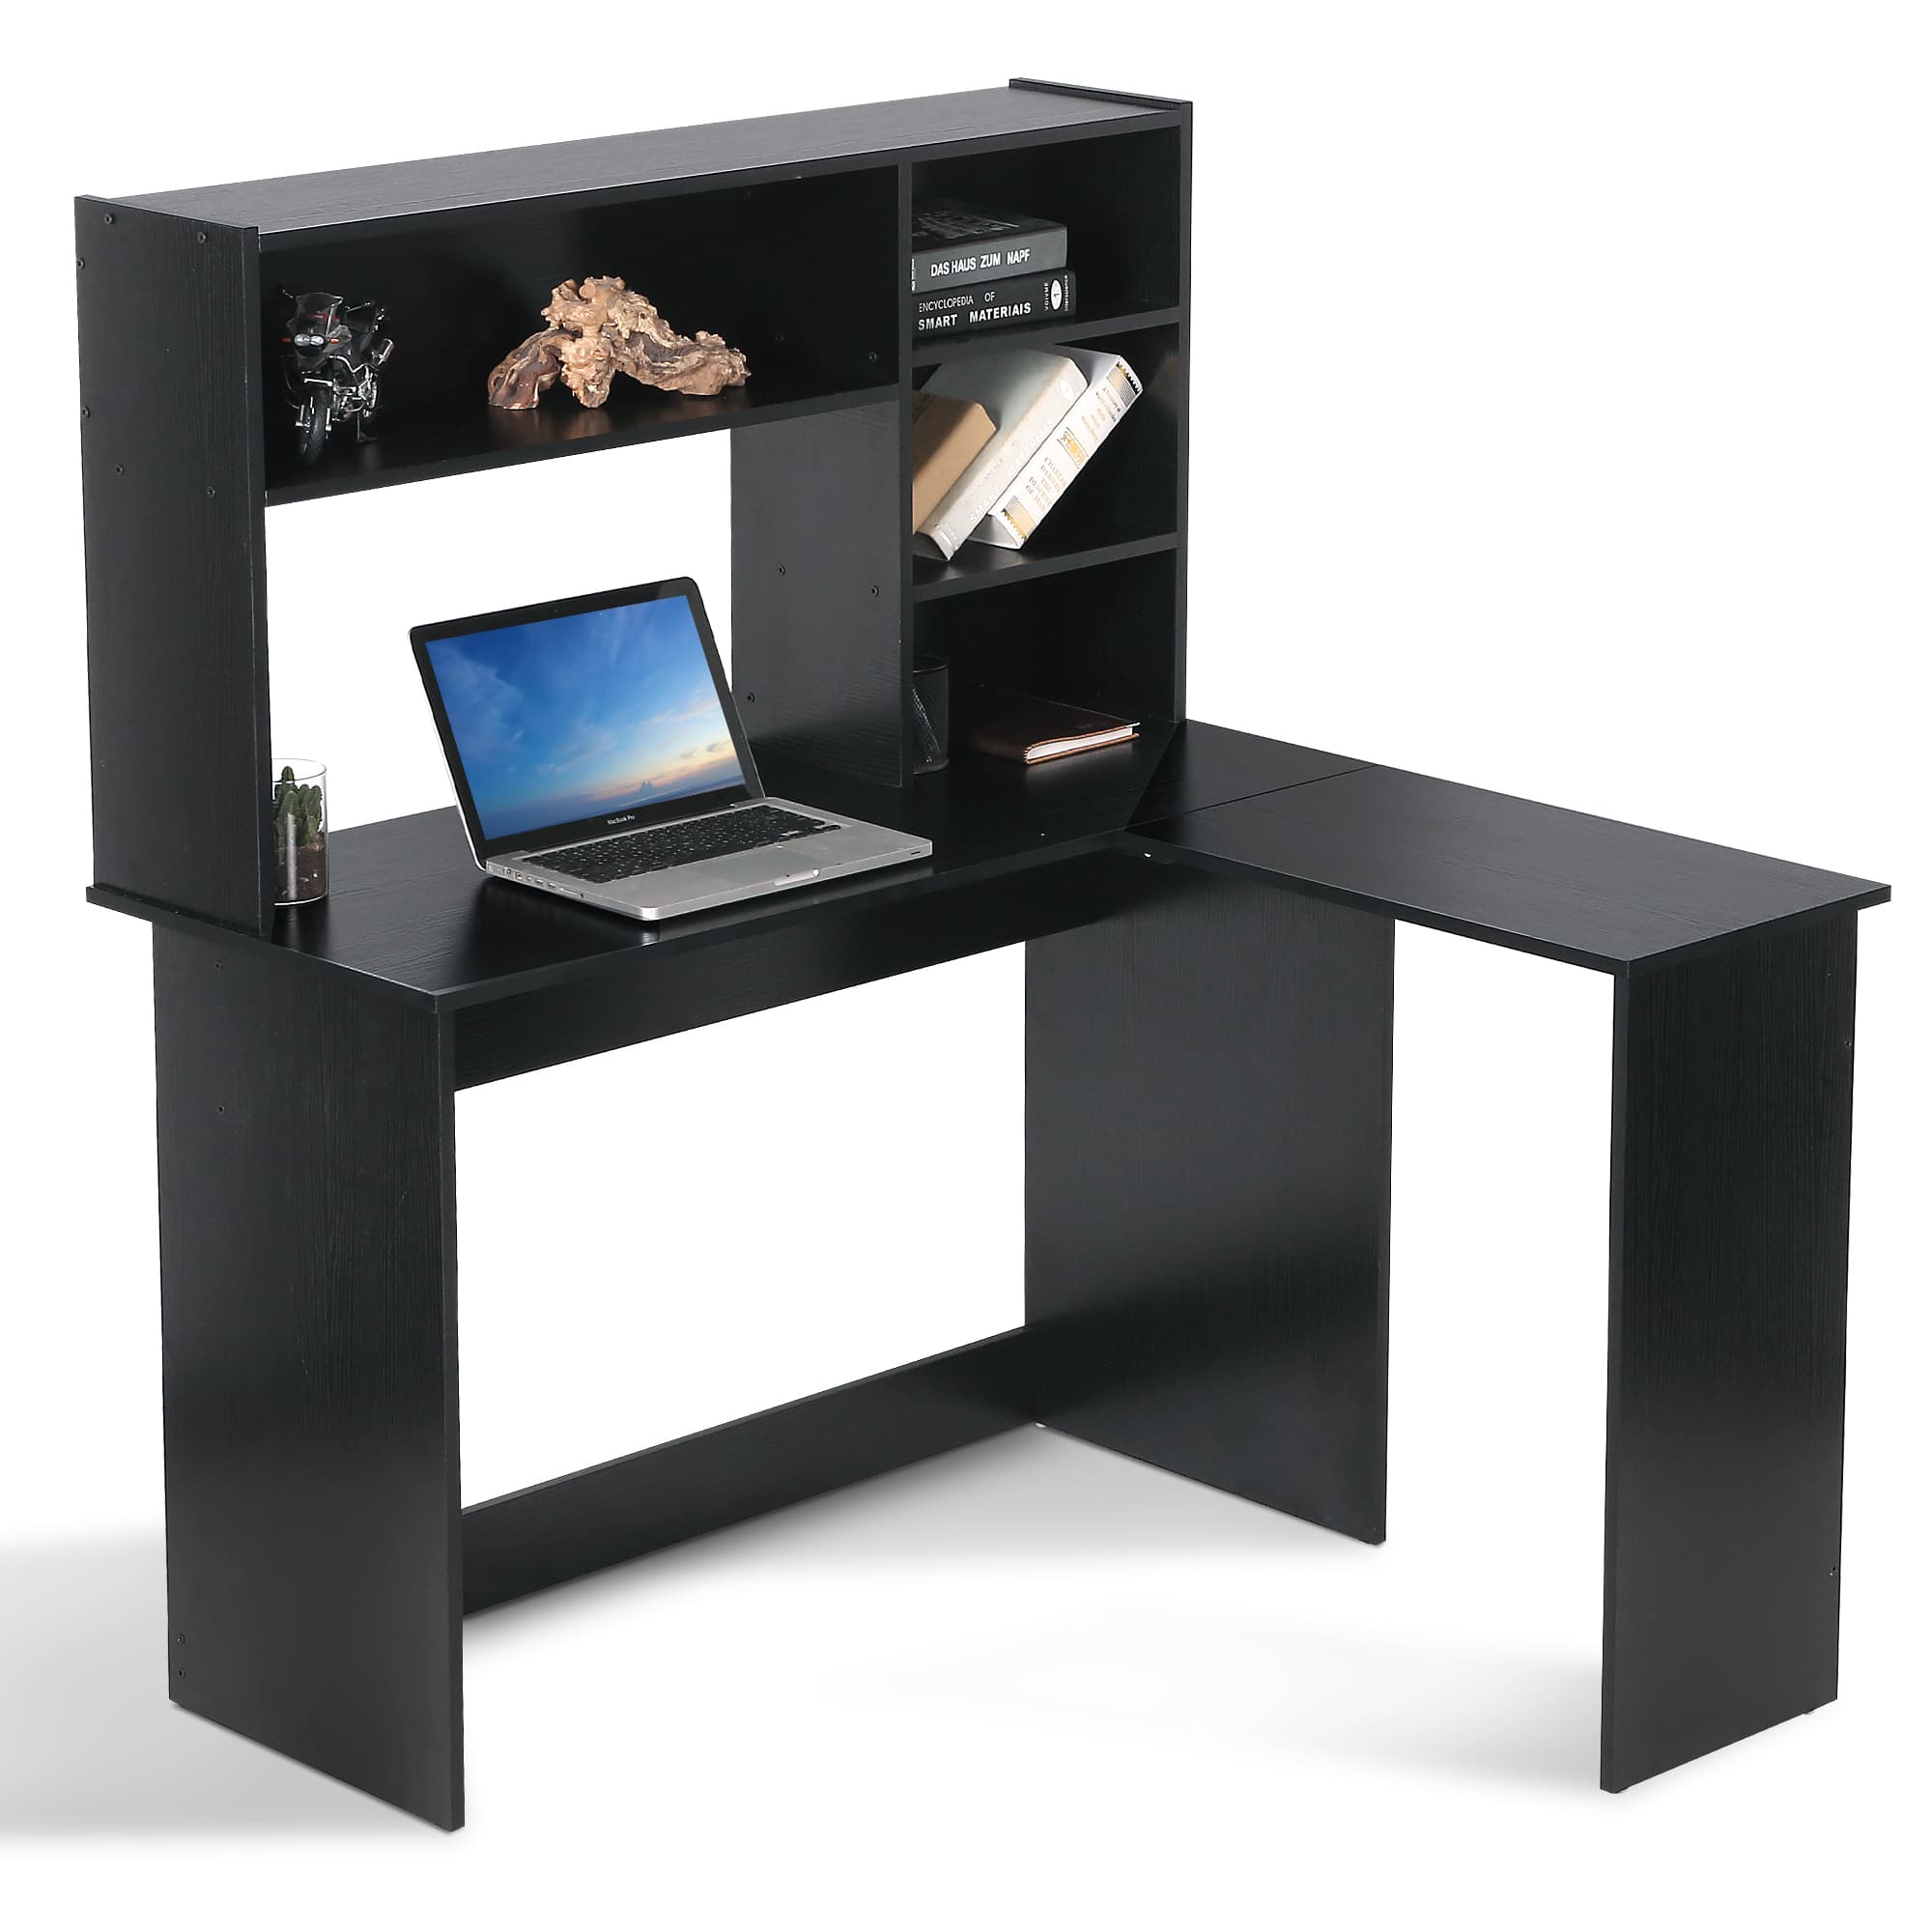 Ivinta Wood L Shaped Computer Desk with Hutch Modern Corner Gaming Desk